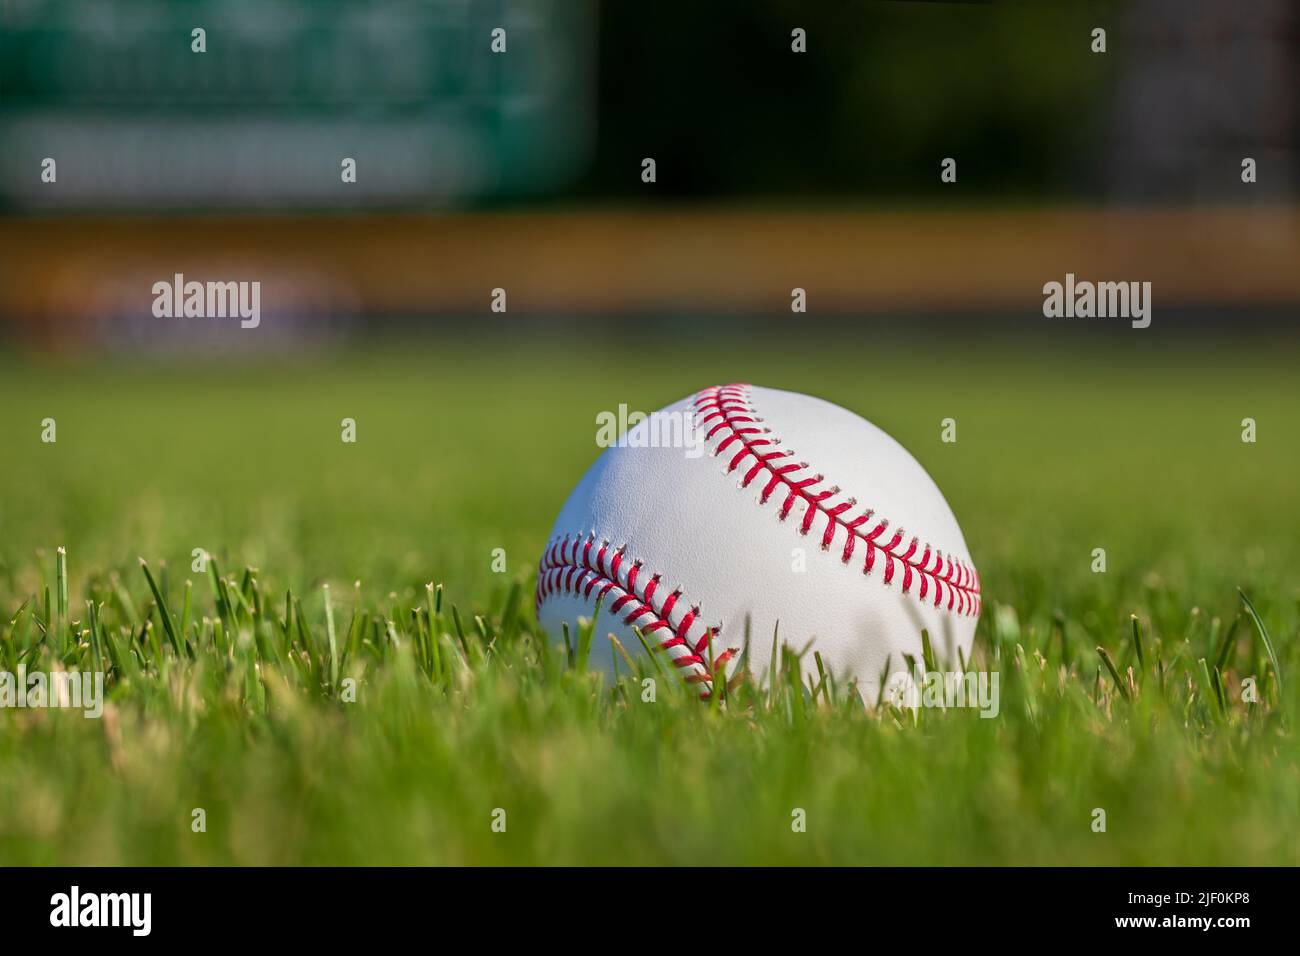 Vue de mise au point sélective à faible angle d'un baseball en herbe avec clôture de champ extérieur en arrière-plan Banque D'Images